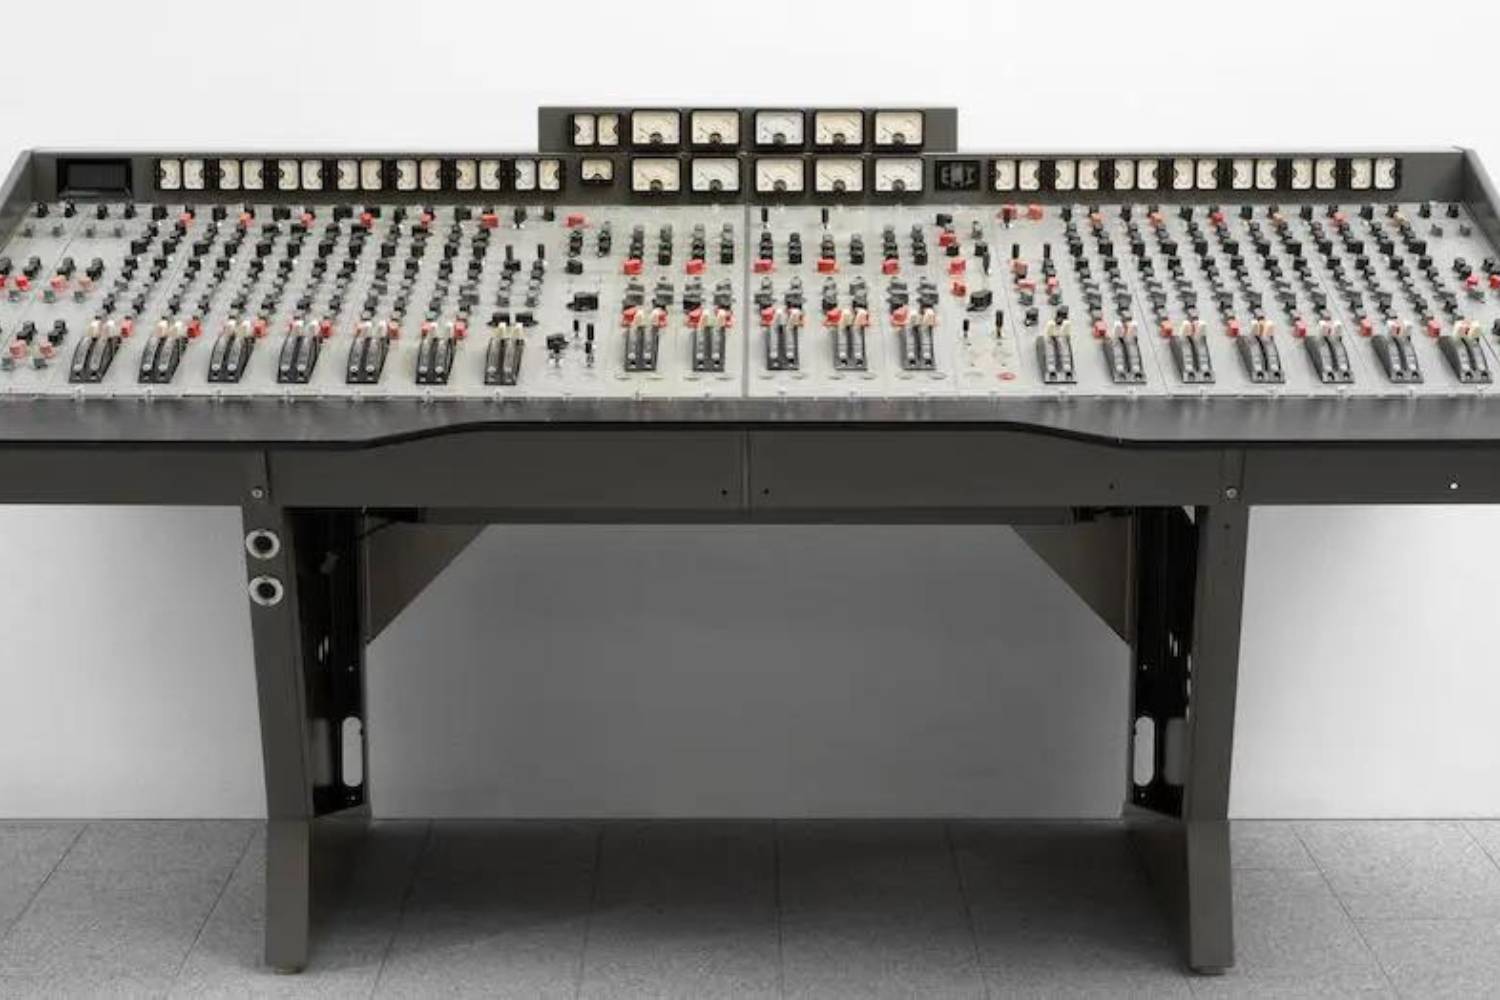 Abbey Road EMI console